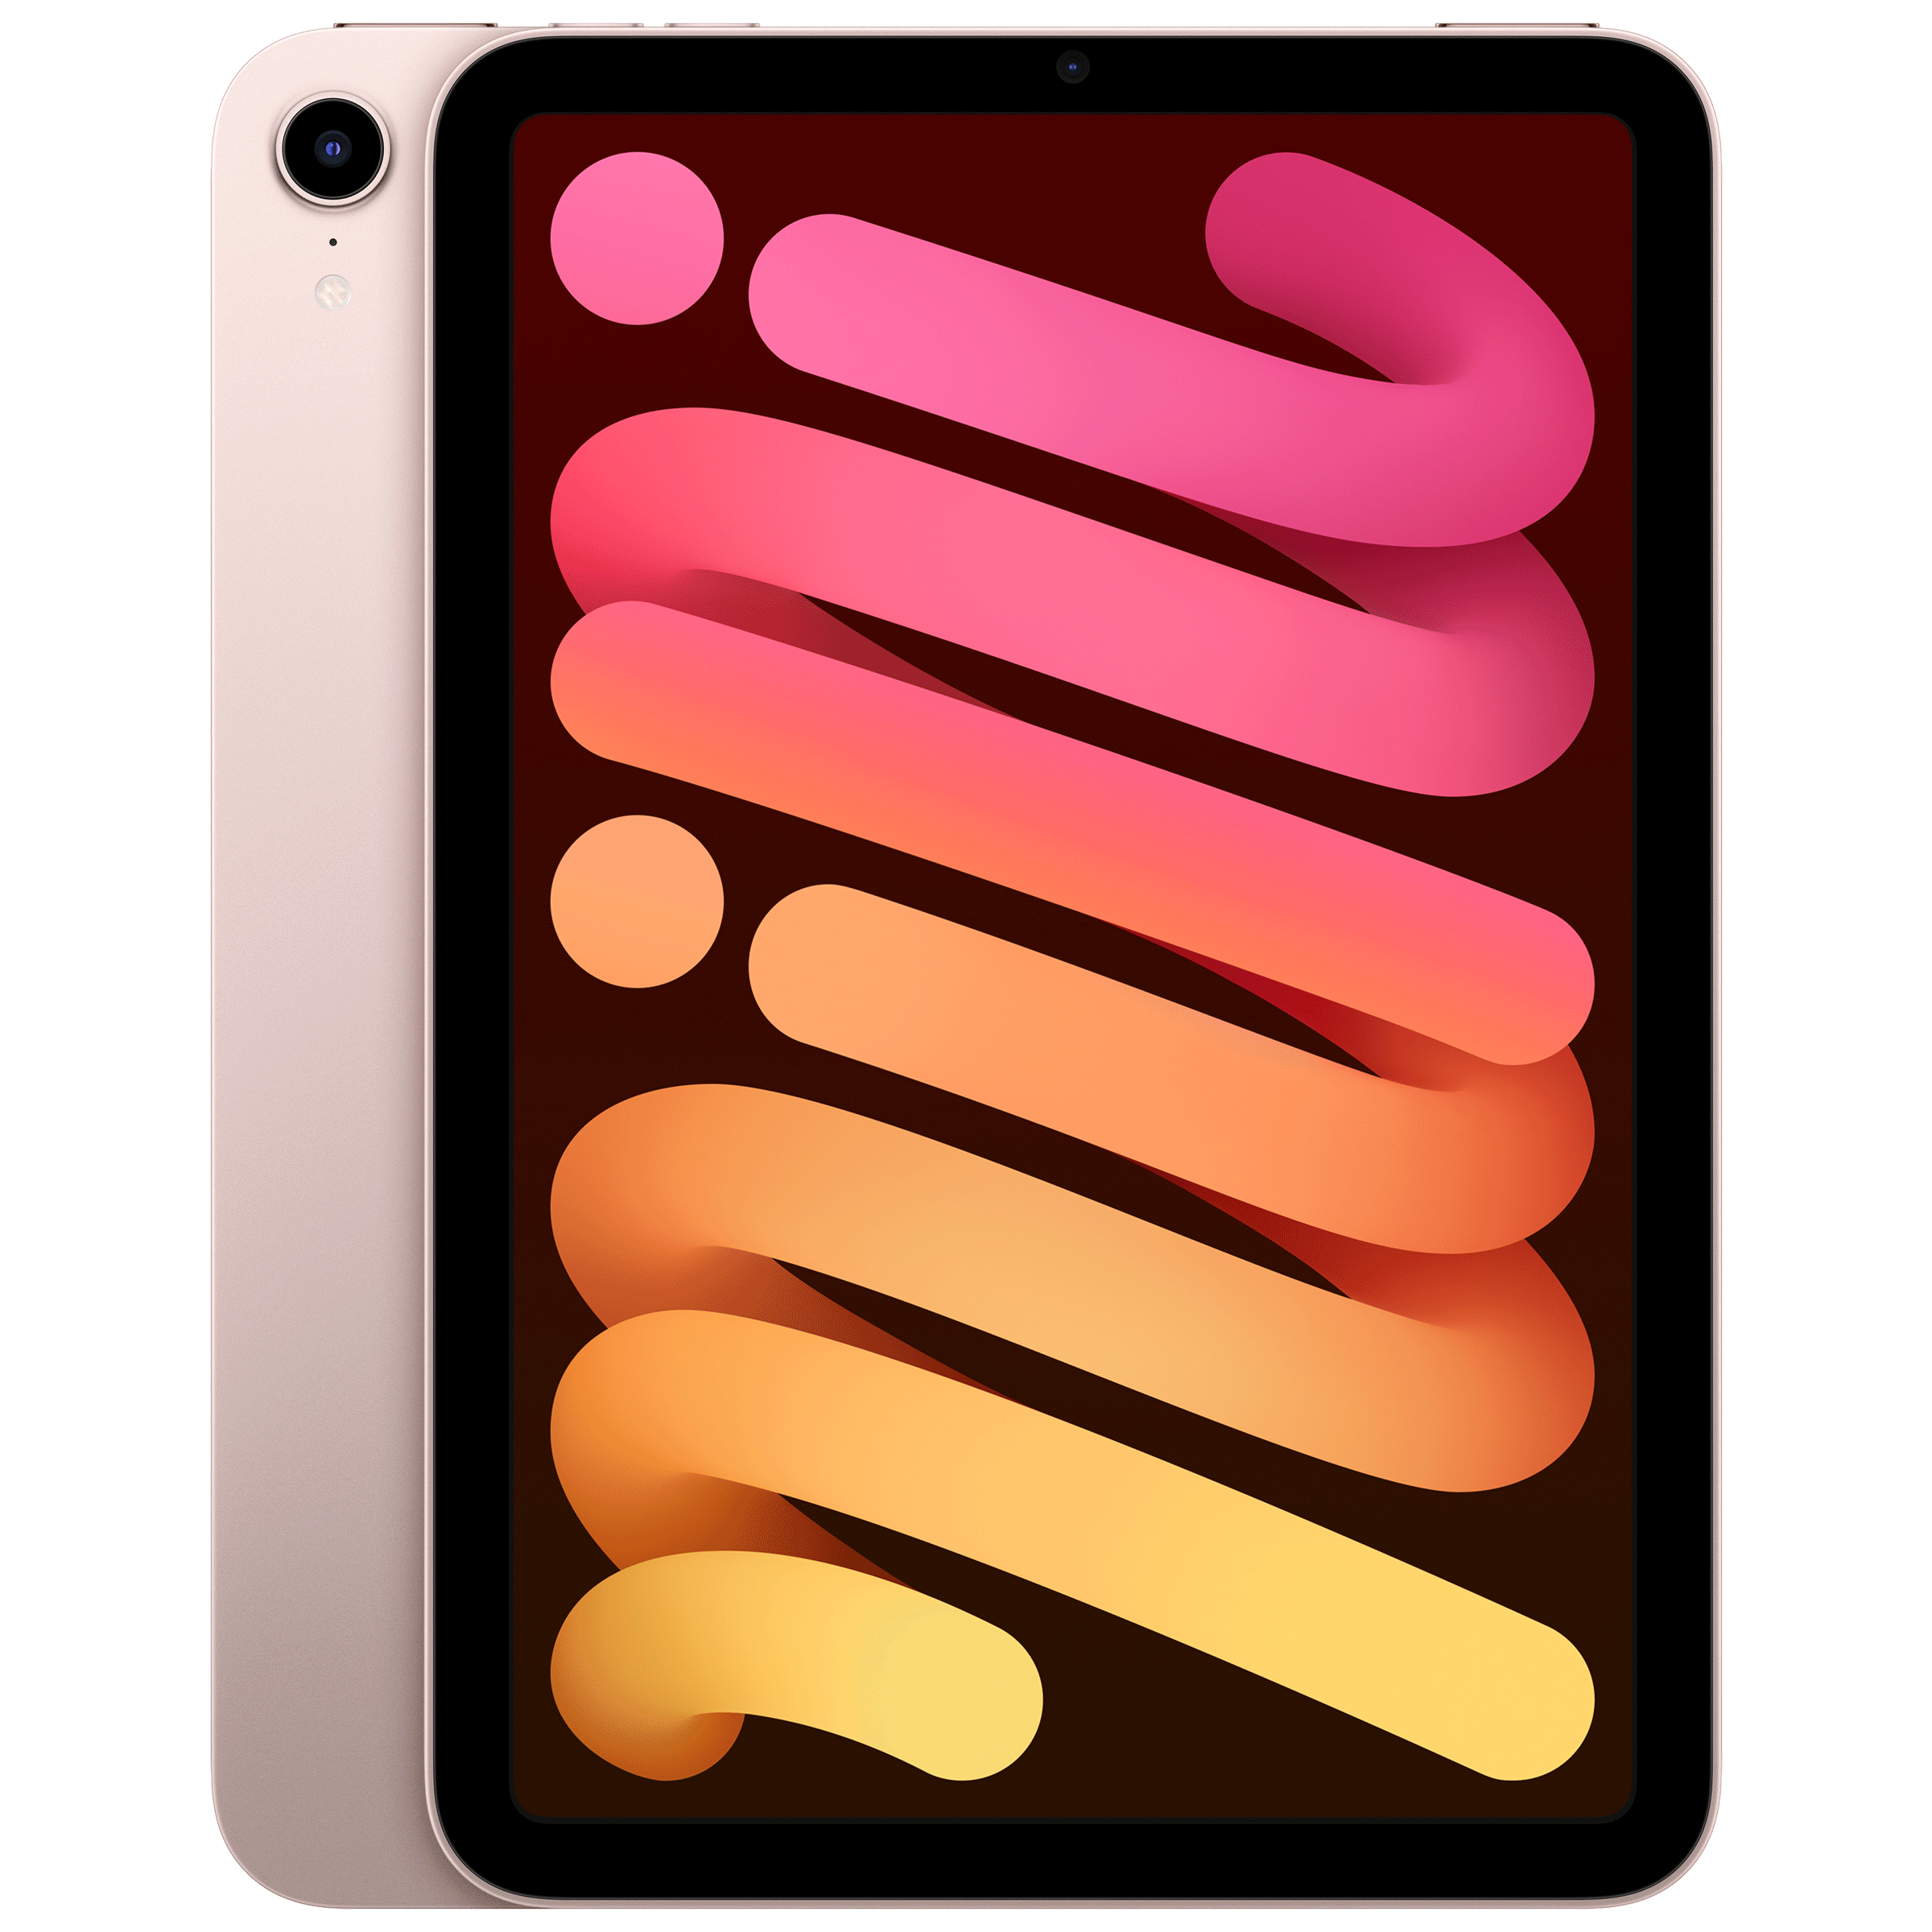 Apple iPad mini 6th Generation Wi-Fi (8.3 Inch, 64GB, Pink, 2021 model)